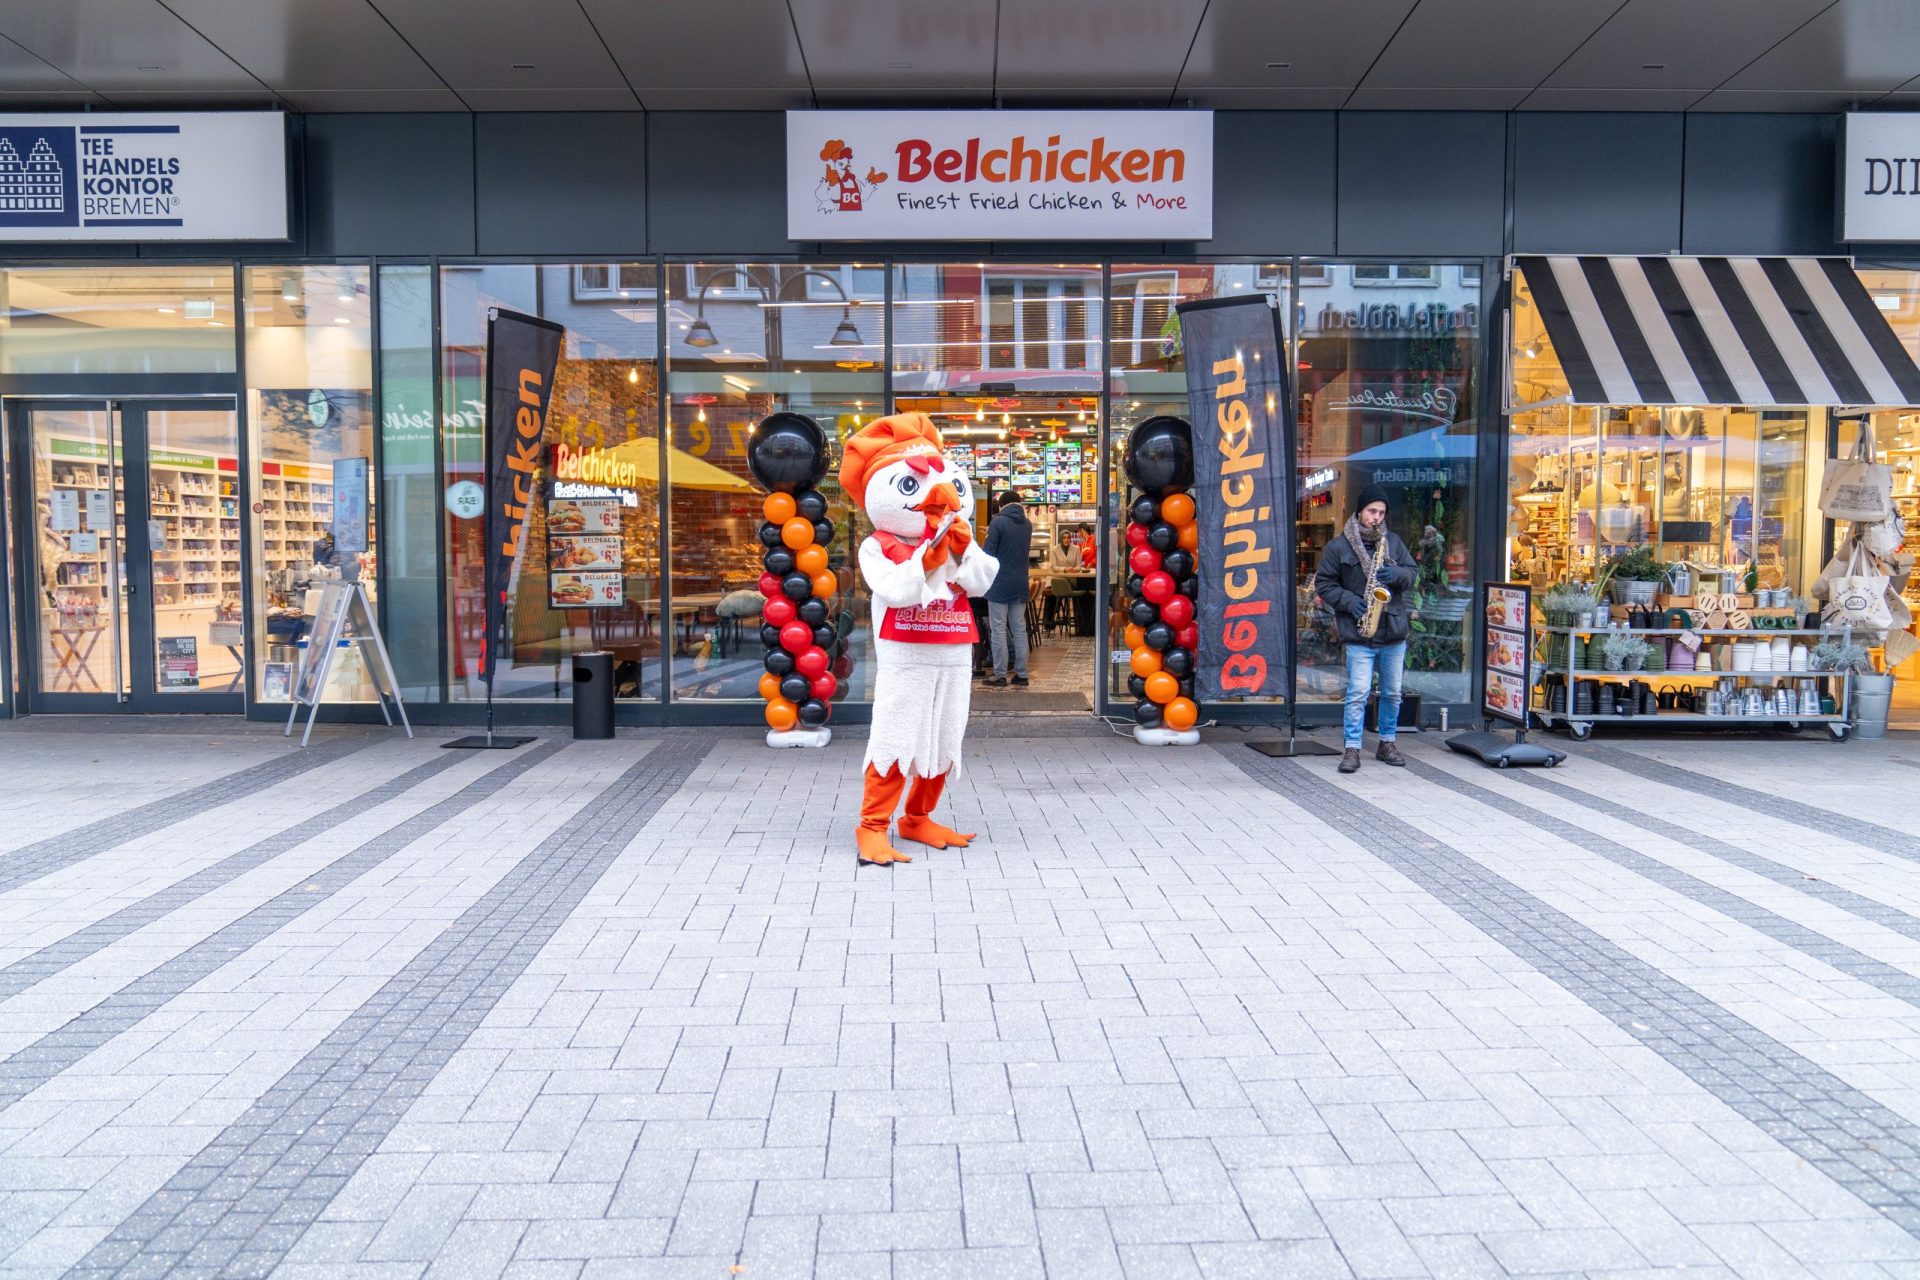 Ouverture festive du restaurant Belchicken à Cologne